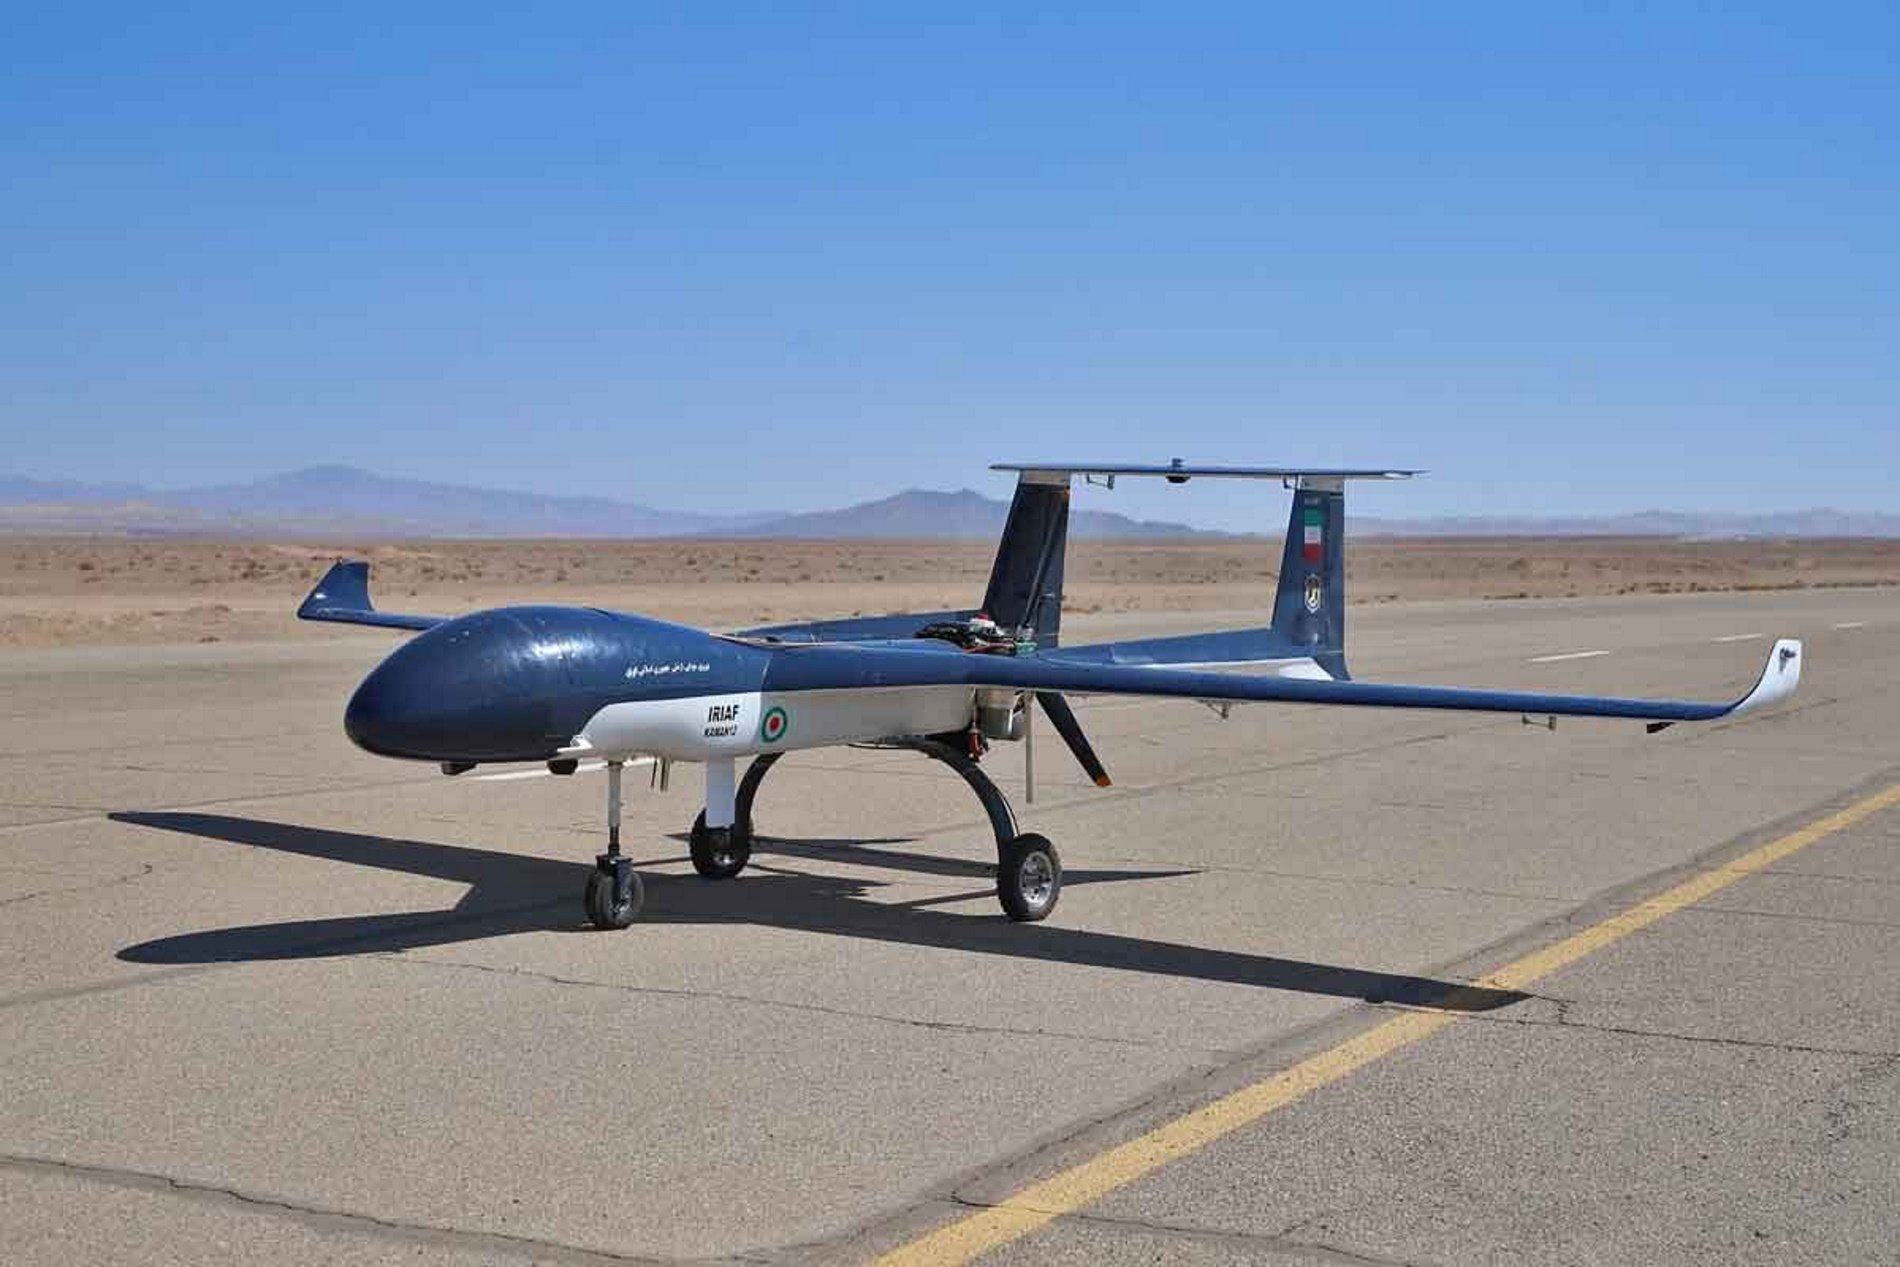 Rússia acorda amb l'Iran fabricar drons iranians en territori rus, segons 'The Washington Post'